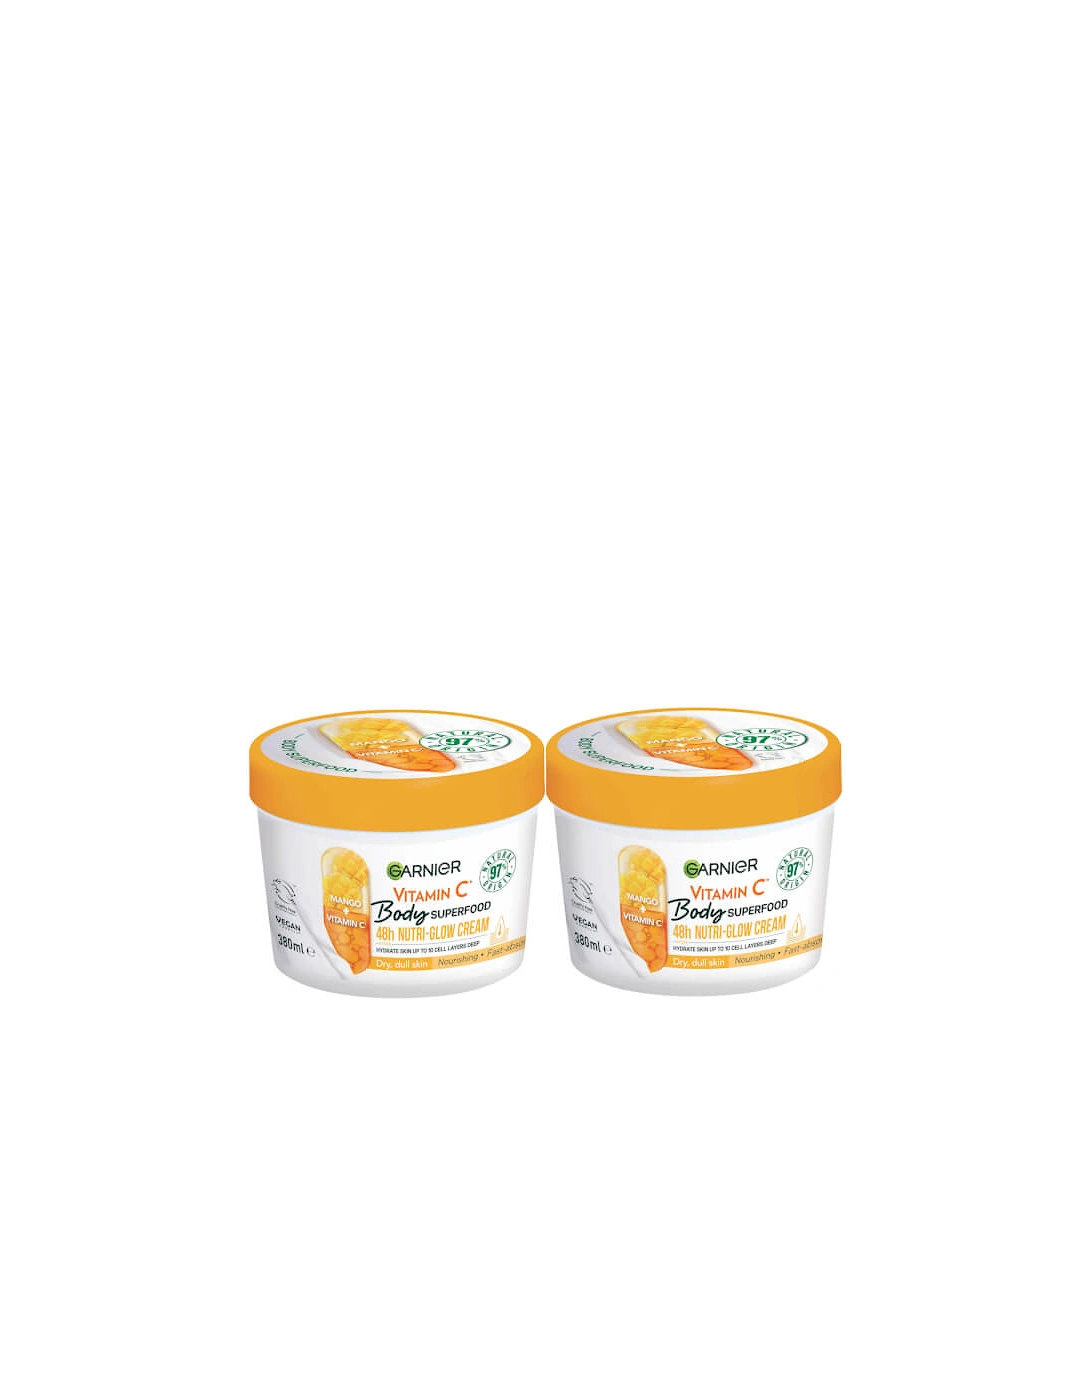 Body Superfood Cream Vitamin C and Mango Duo, 2 of 1